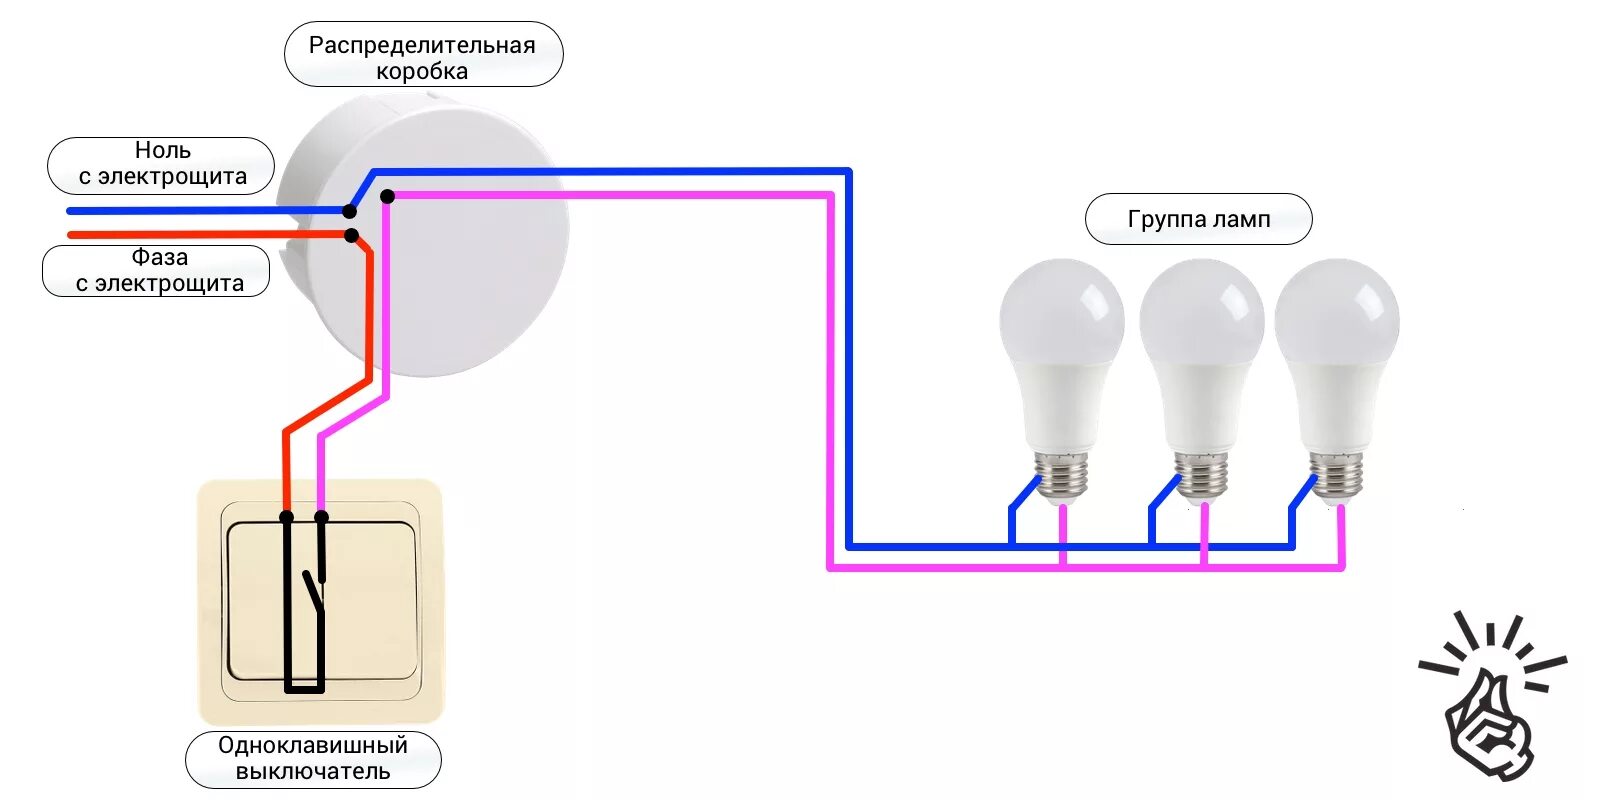 Схема подключения одноклавишного выключателя на две лампочки. Схема подключения одноклавишного выключателя на две лампы. Схема подключения одноклавишного выключателя к лампе. Схема подключения выключателя одноклавишного к 2 лампочкам.